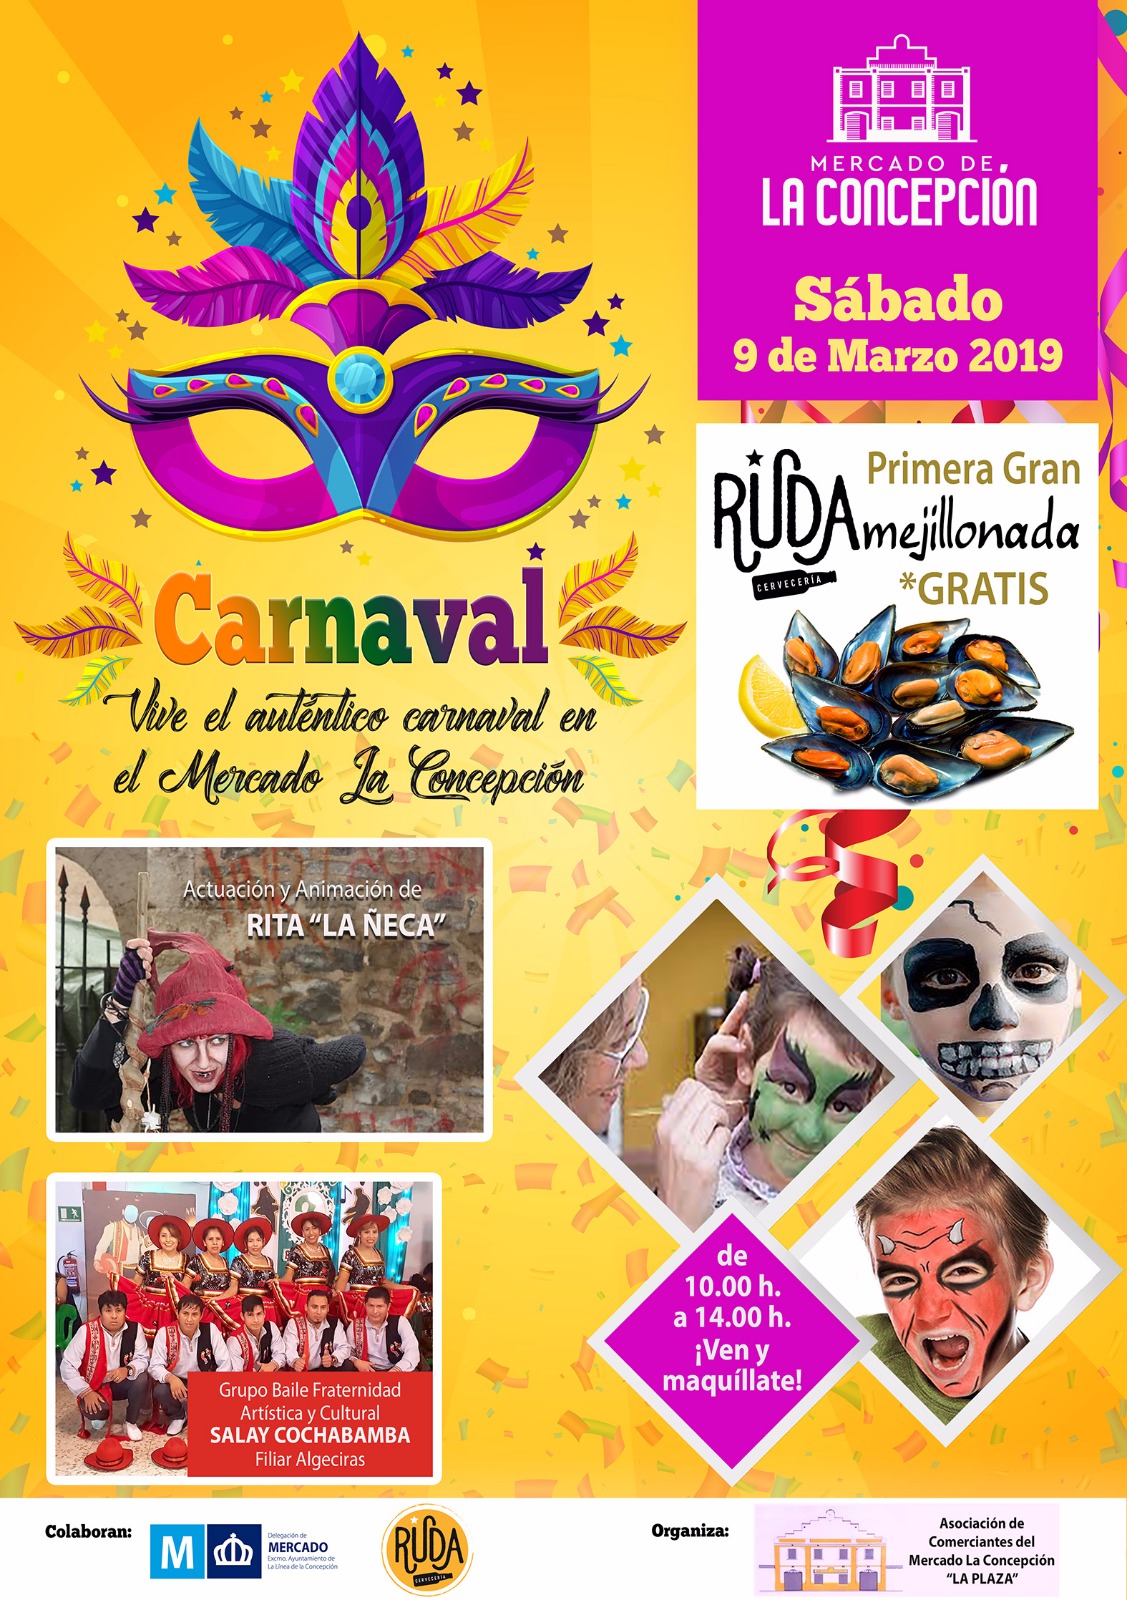 Carnaval Mercado de la Concepcion